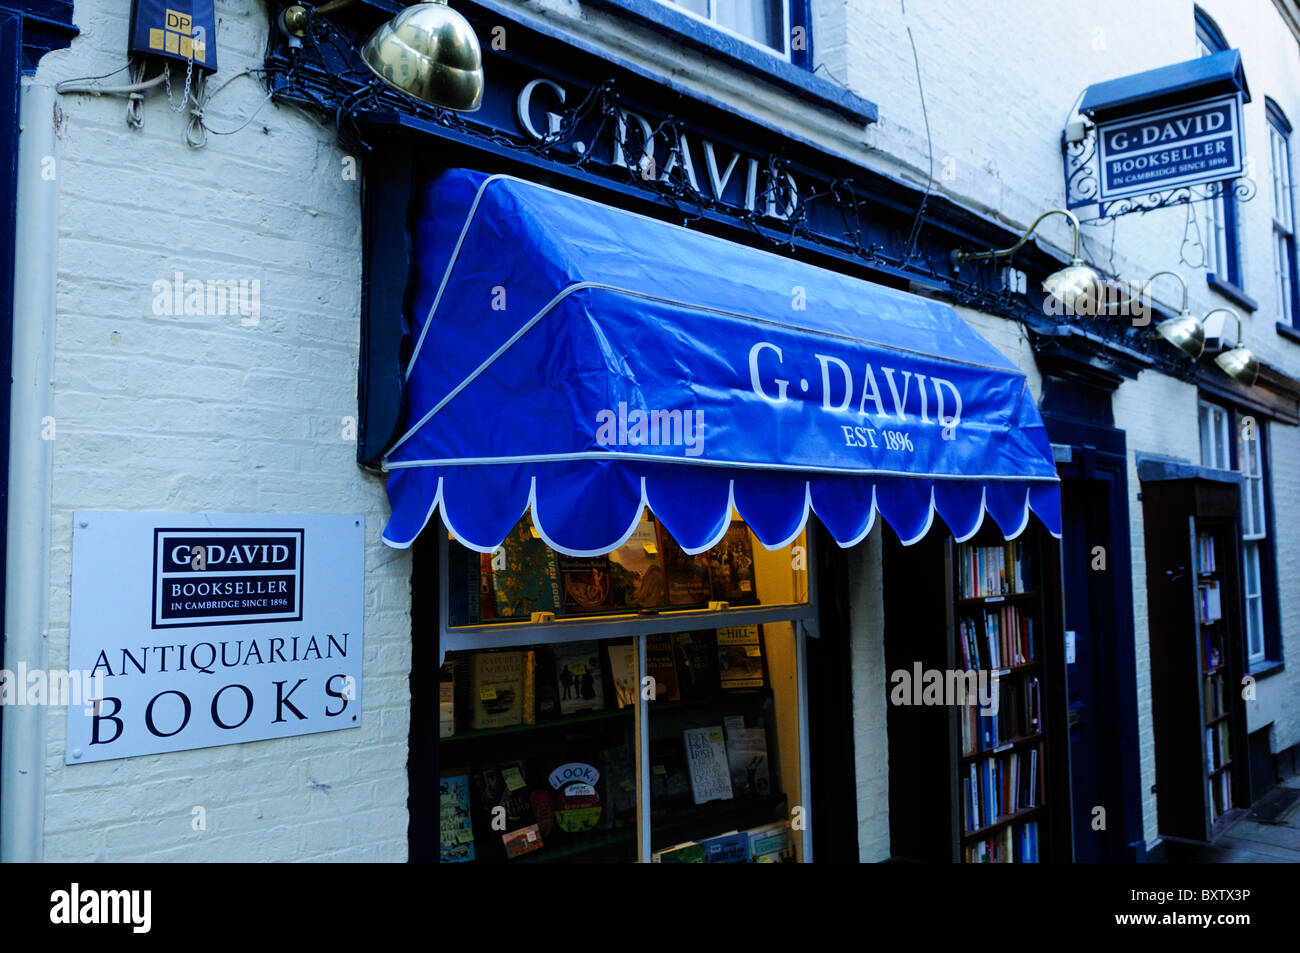 G.David Librería Anticuaria, St Edwards pasaje, Cambridge, Inglaterra, Reino Unido. Foto de stock